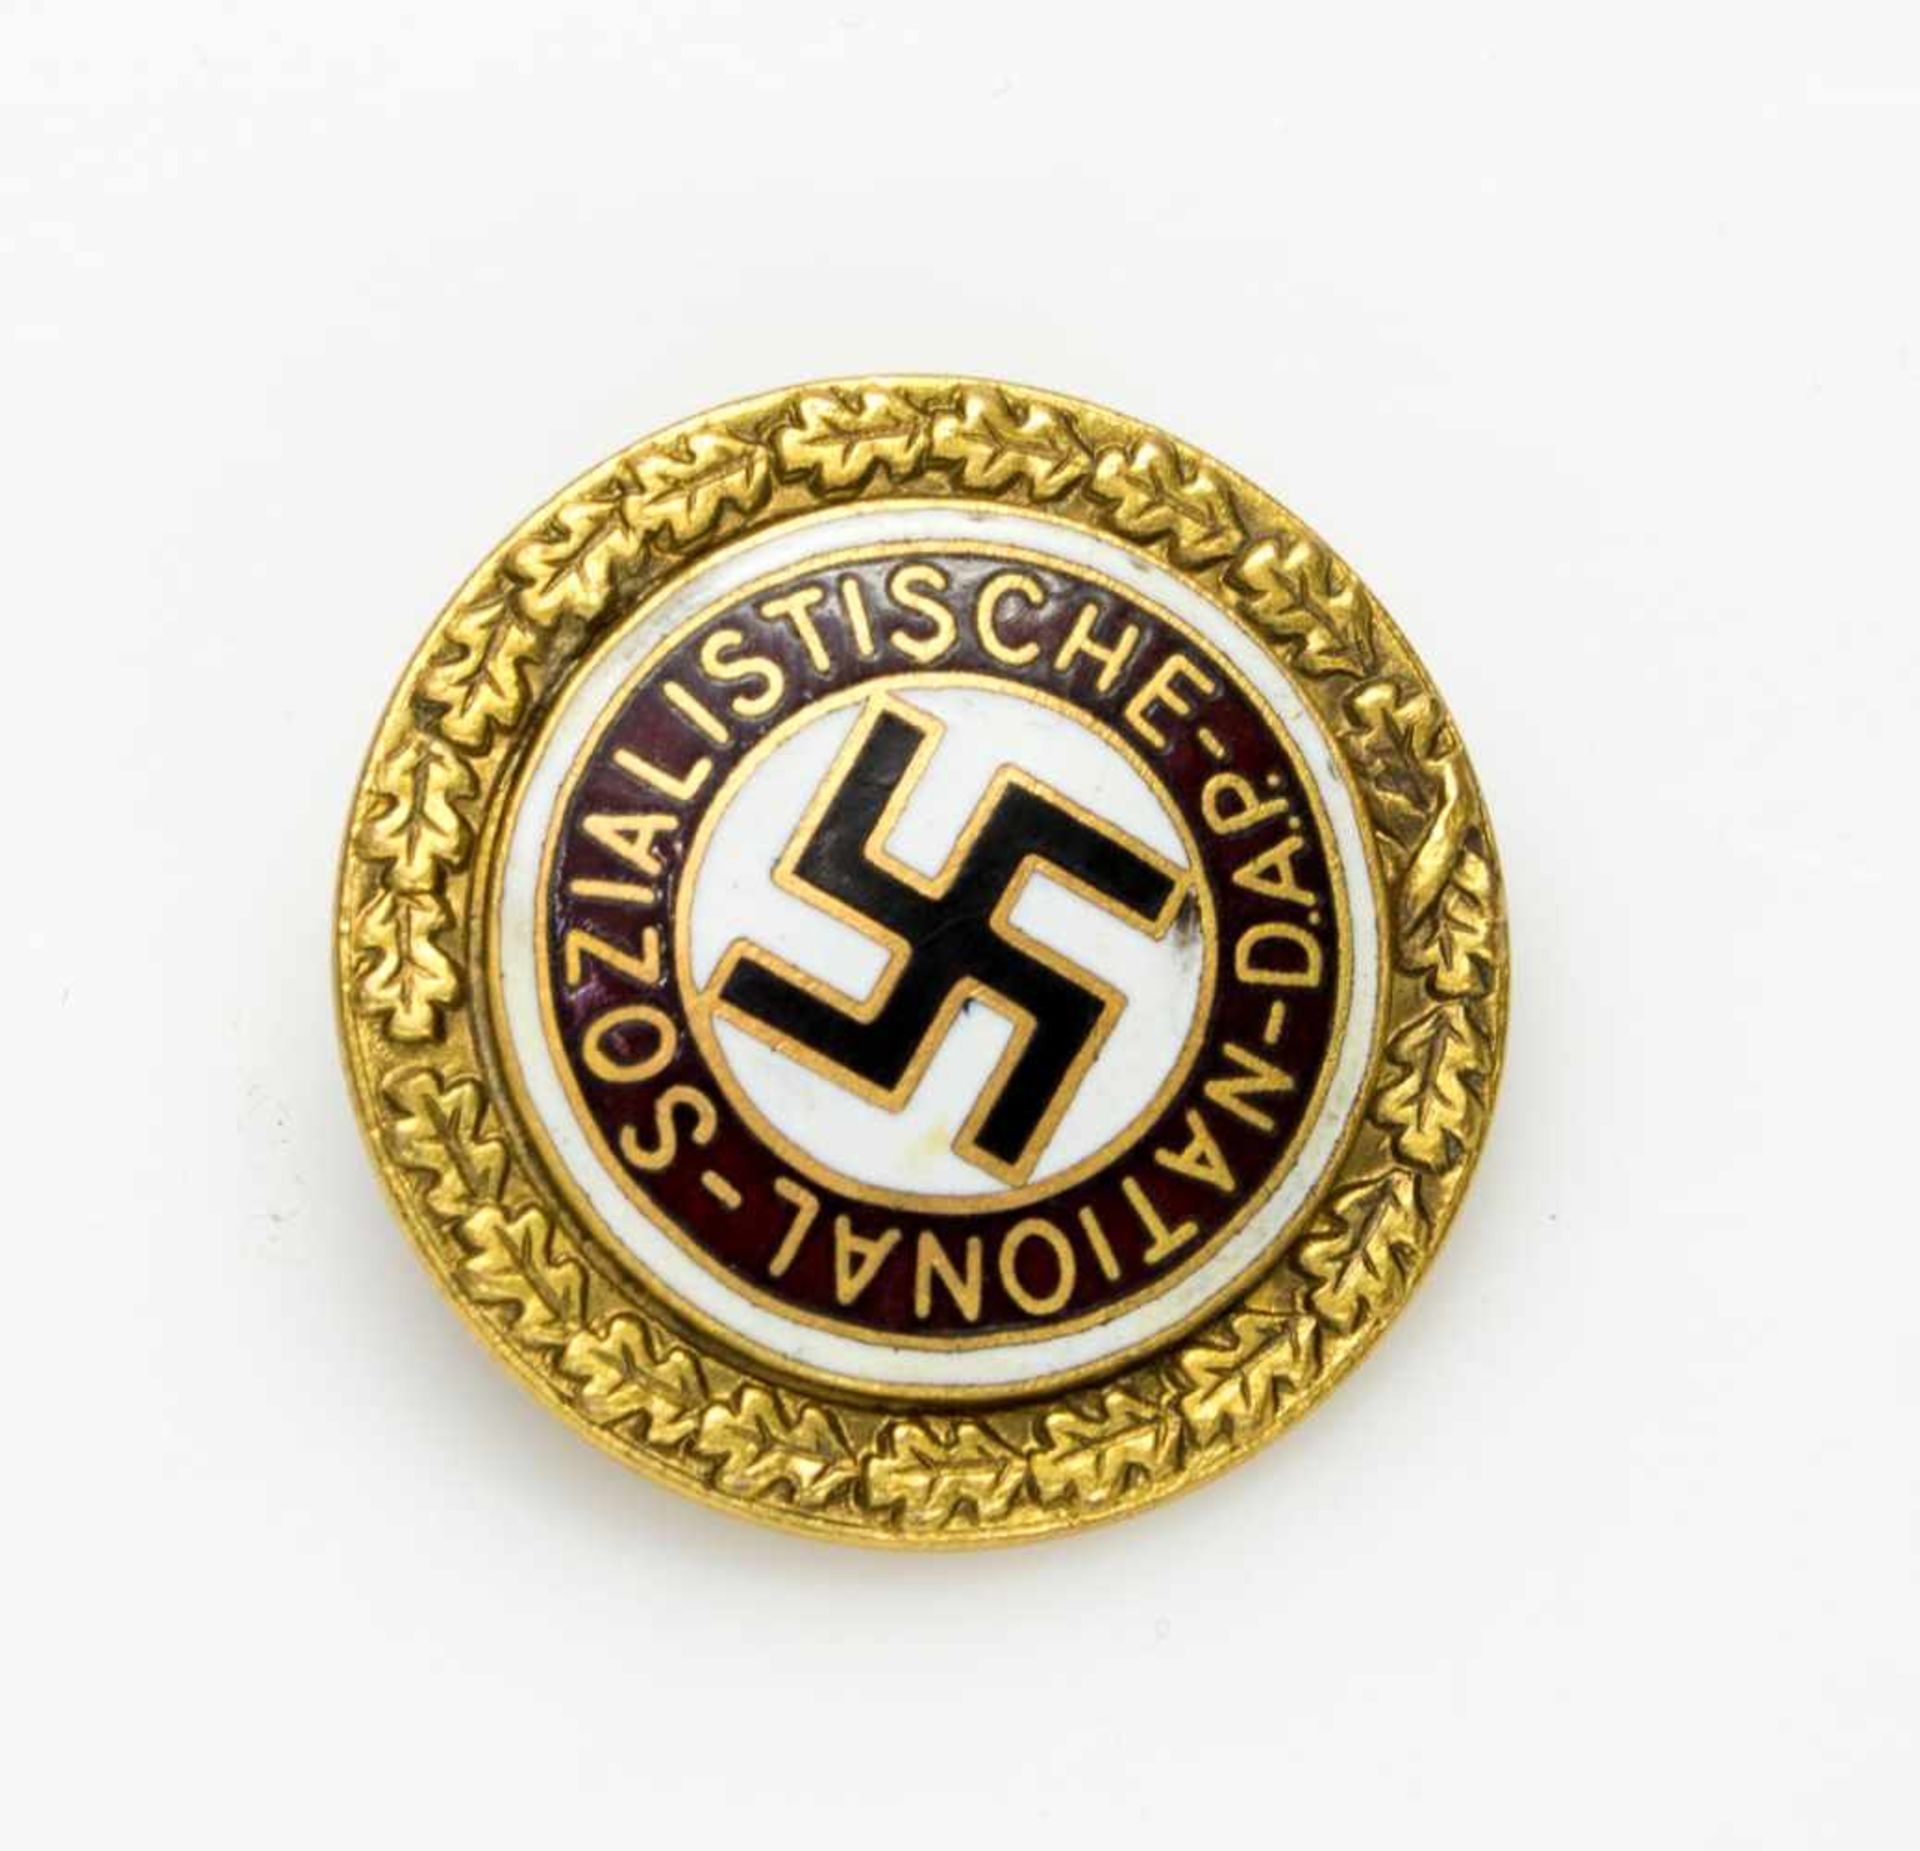 Goldenes Ehrenzeichender NSDAP, Faksimilie AH u. Datum 30.01.39 (233 Stück verliehen), an